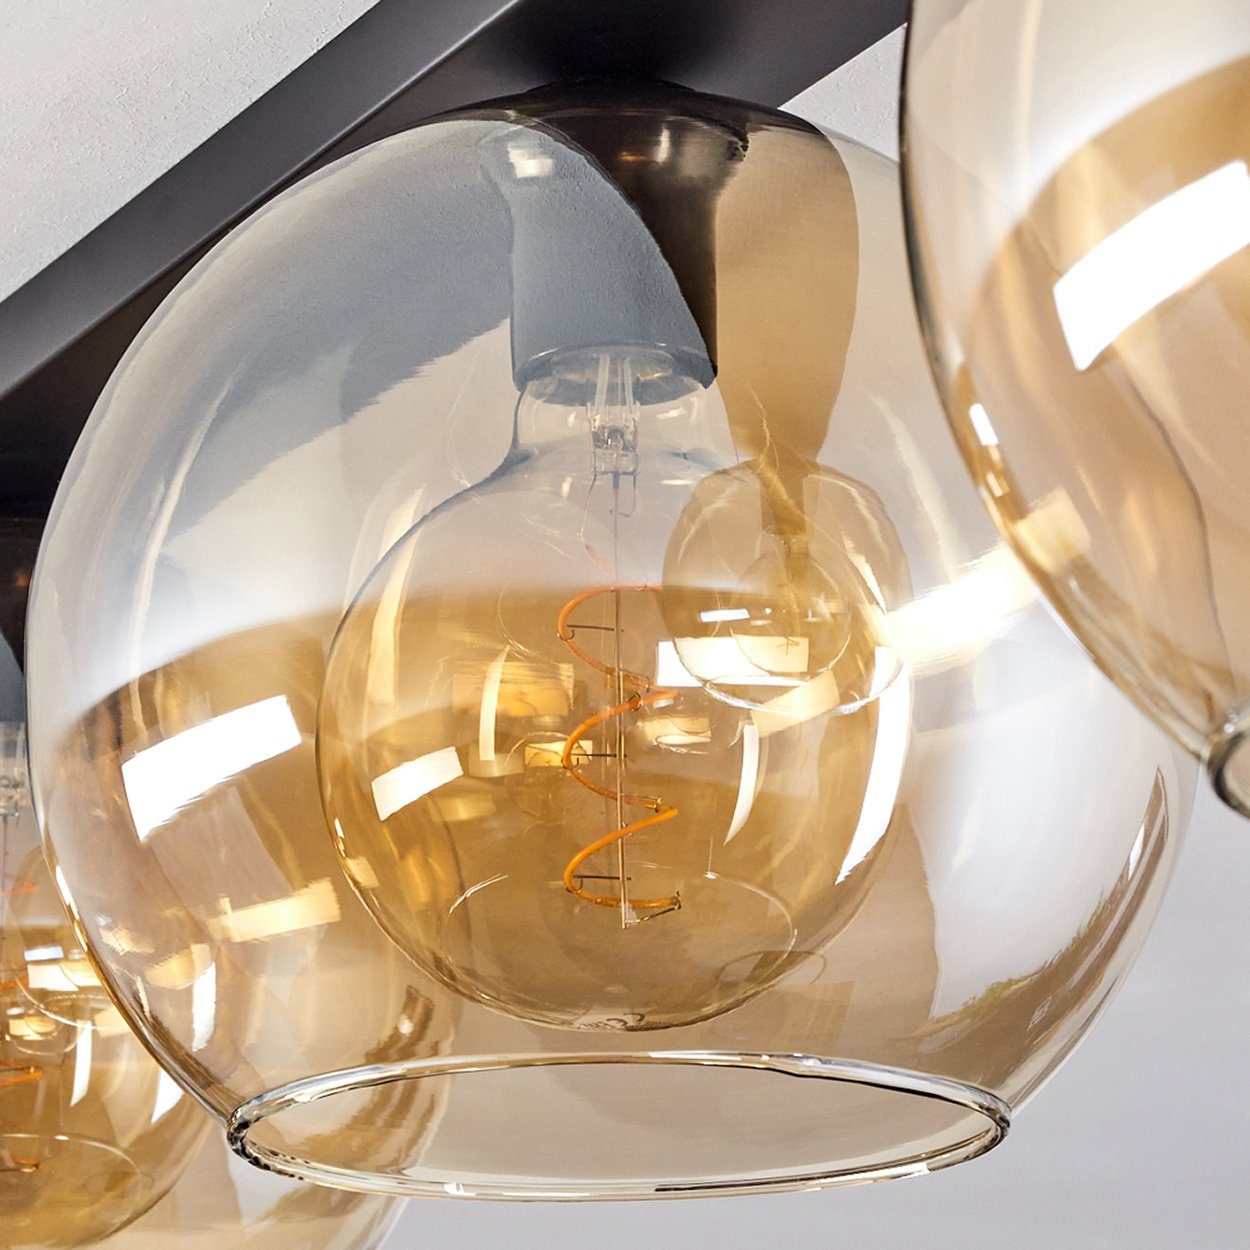 Retro/Vintage-Design Glas hofstein Deckenlampe Schirmen mit Leuchtmittel, in ohne Leuchte Metall/Glas (25cm), aus »Cesaro« 3xE27 Schwarz/Bernsteinfarben/Klar, im aus Deckenleuchte